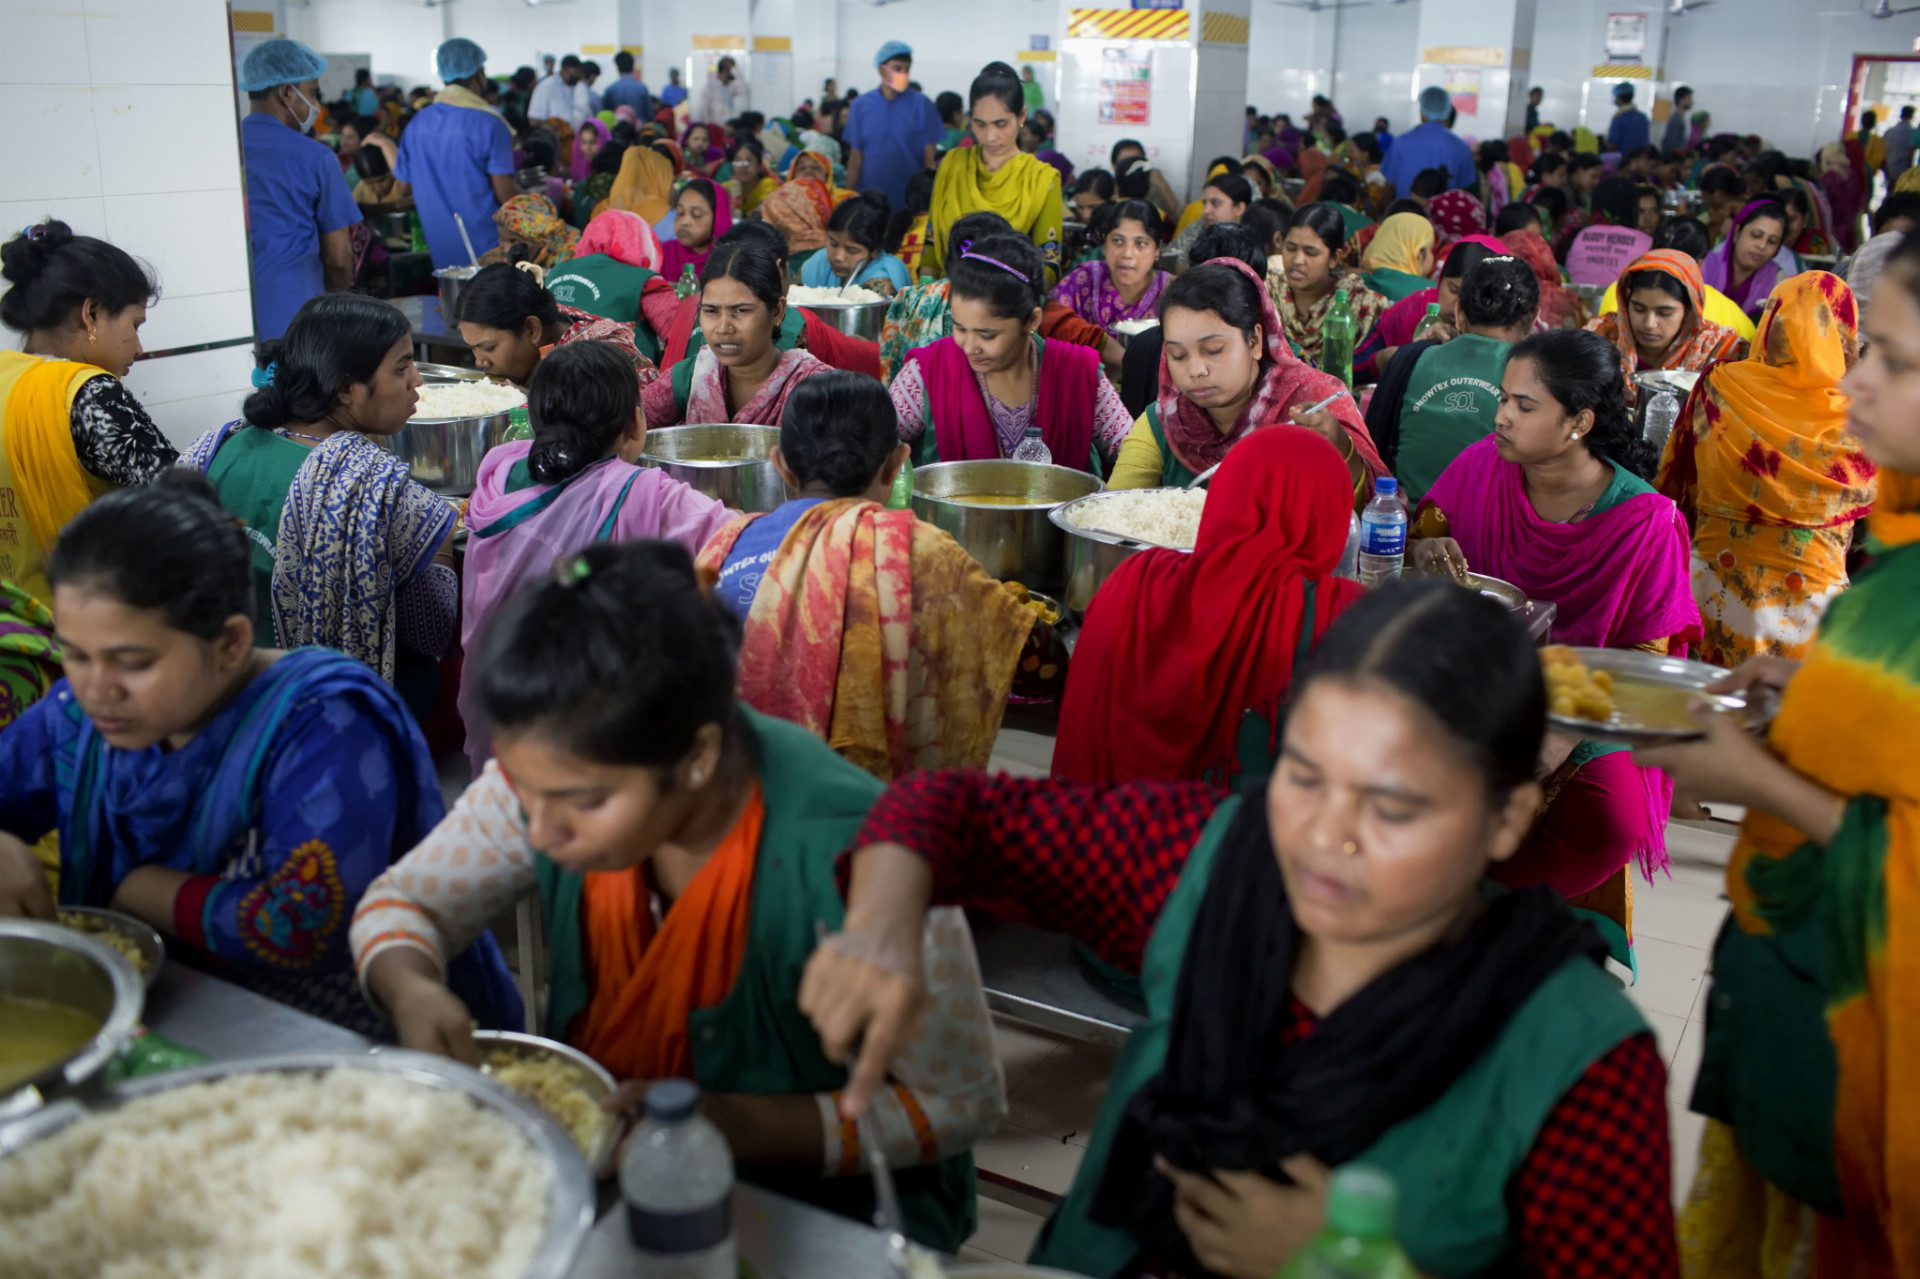 Transfer priemyselných odvetví do oblastí s nízkymi platmi prispieva k stagnácii životnej úrovne strednej vrstvy. Na snímke sú pracovníčky textilky v Bangladéši počas obeda.